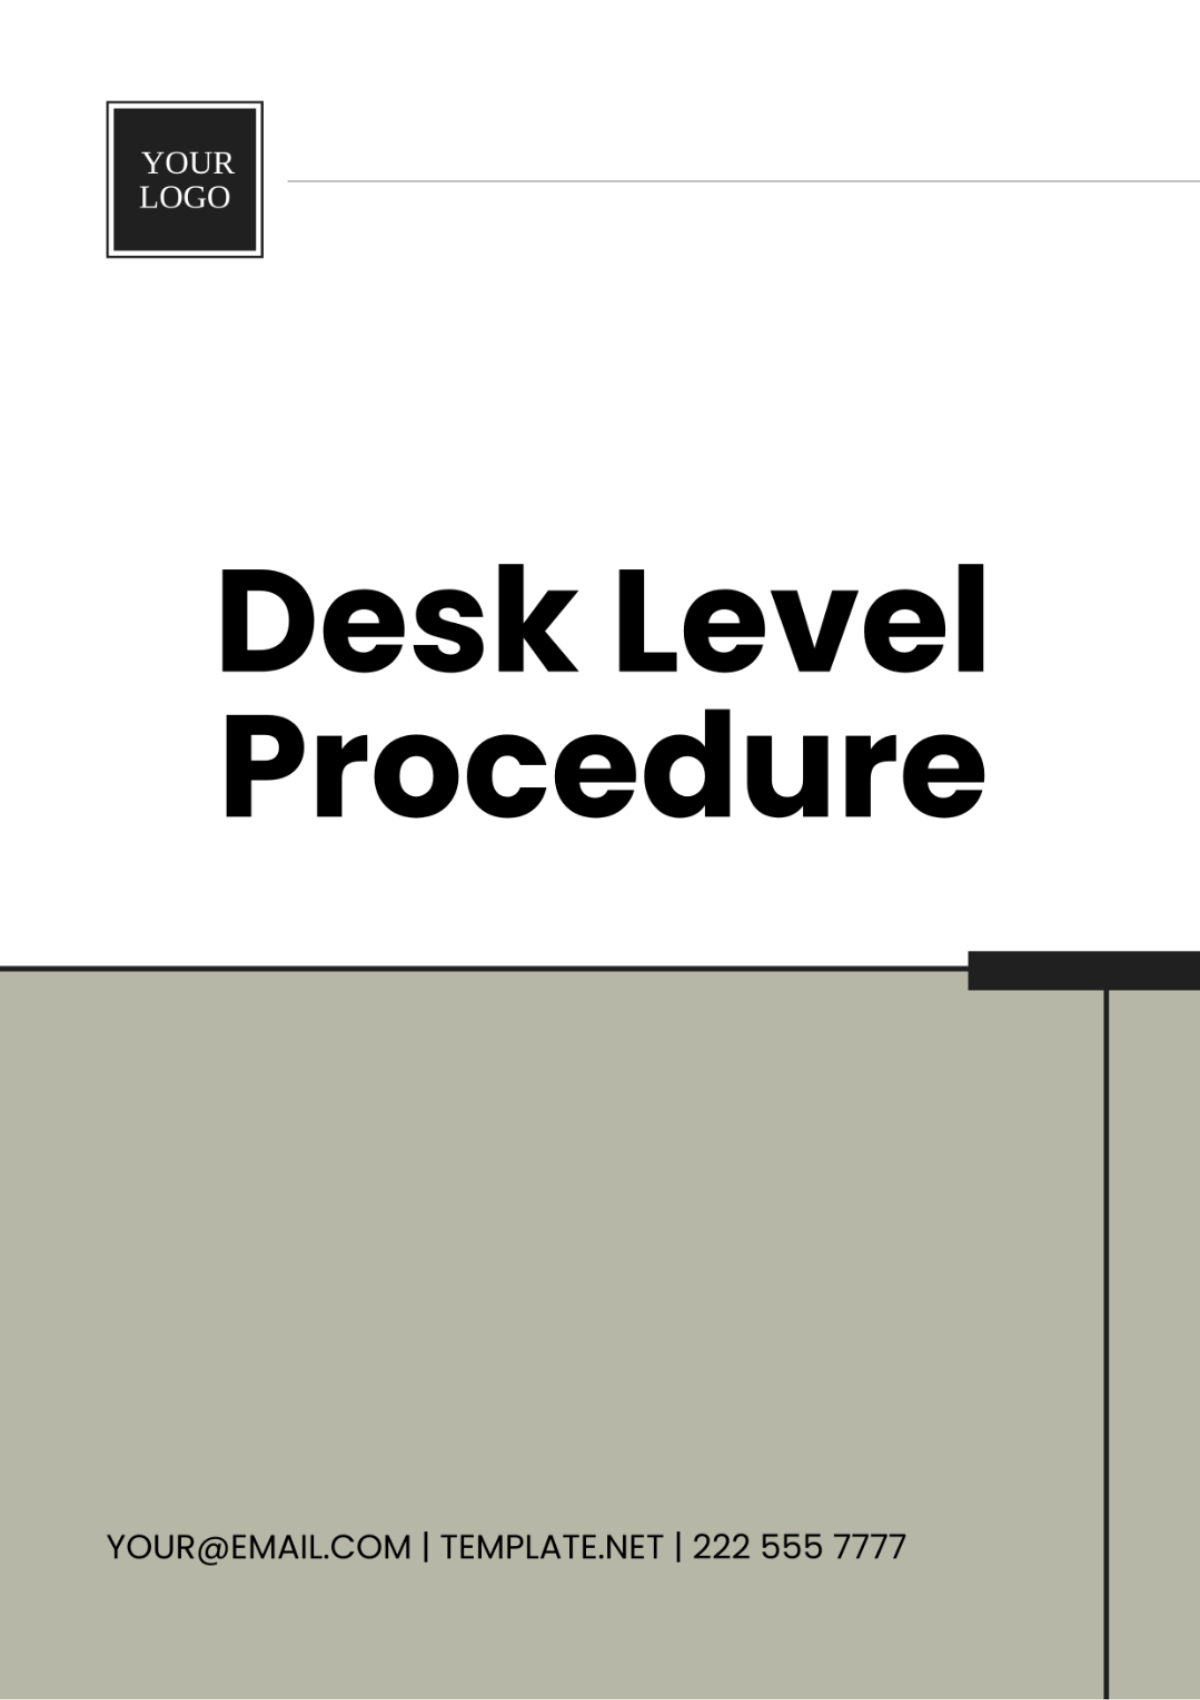 Free Desk Level Procedure Template